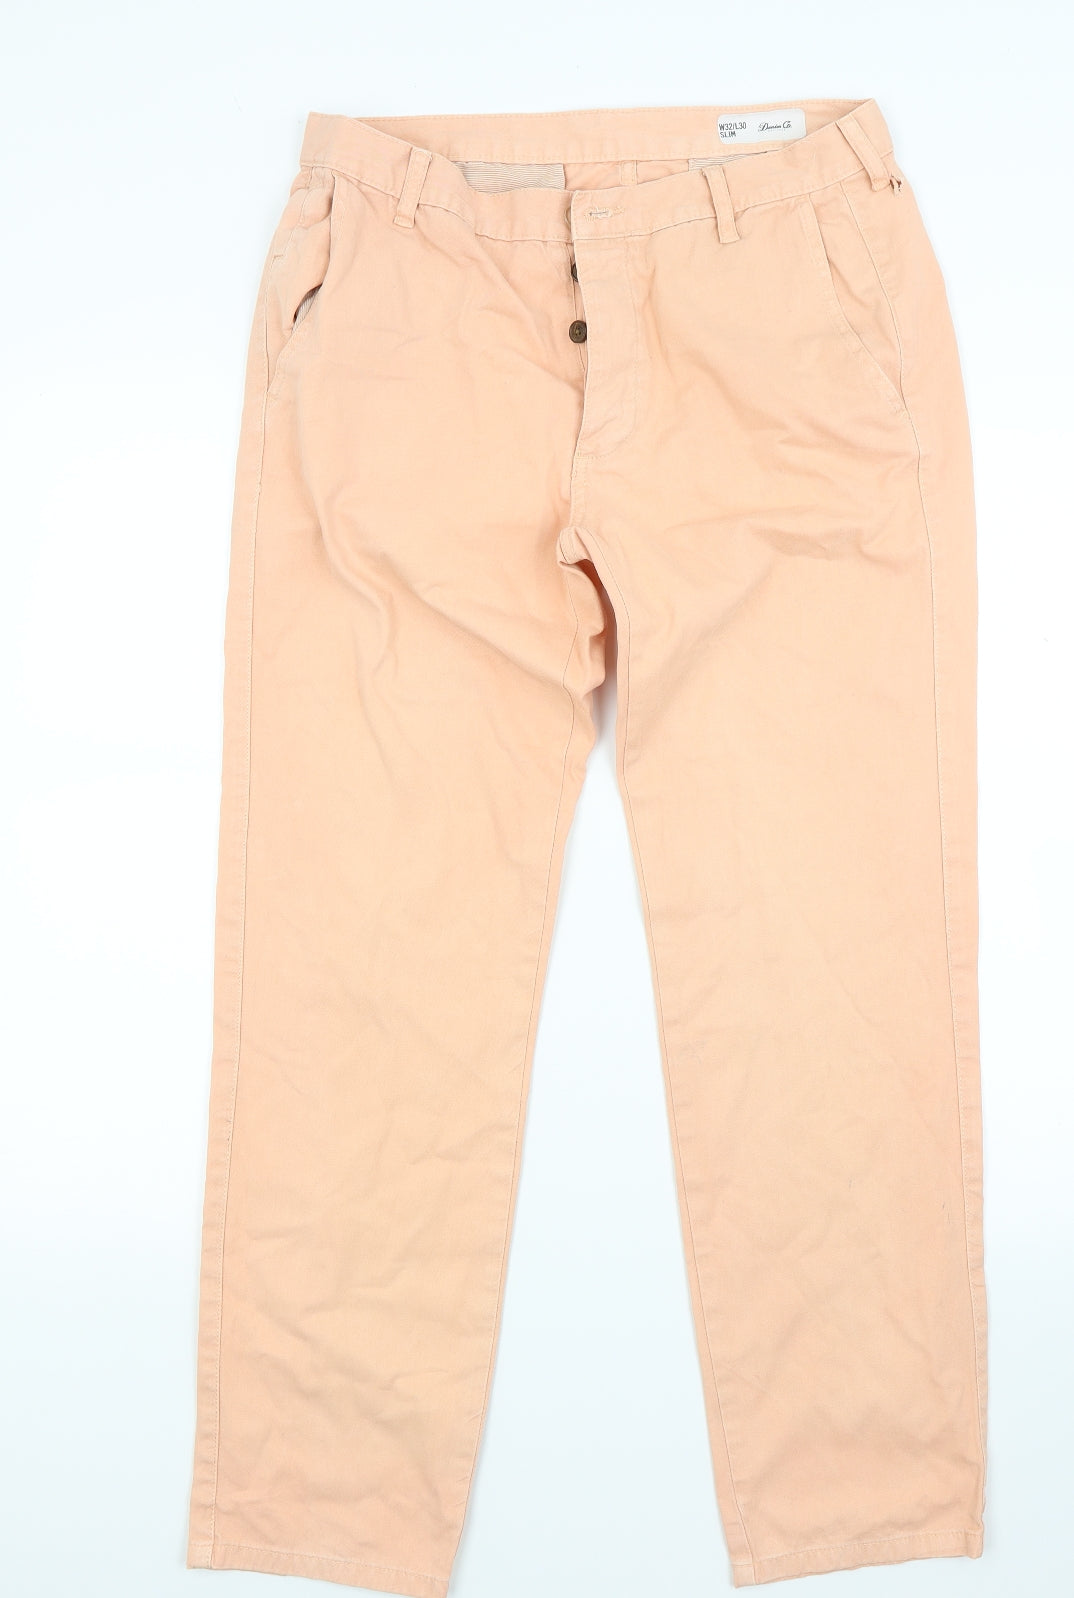 Yokodea Beige High-Waist Paper-Bag Pants - Women | Best Price and Reviews |  Zulily